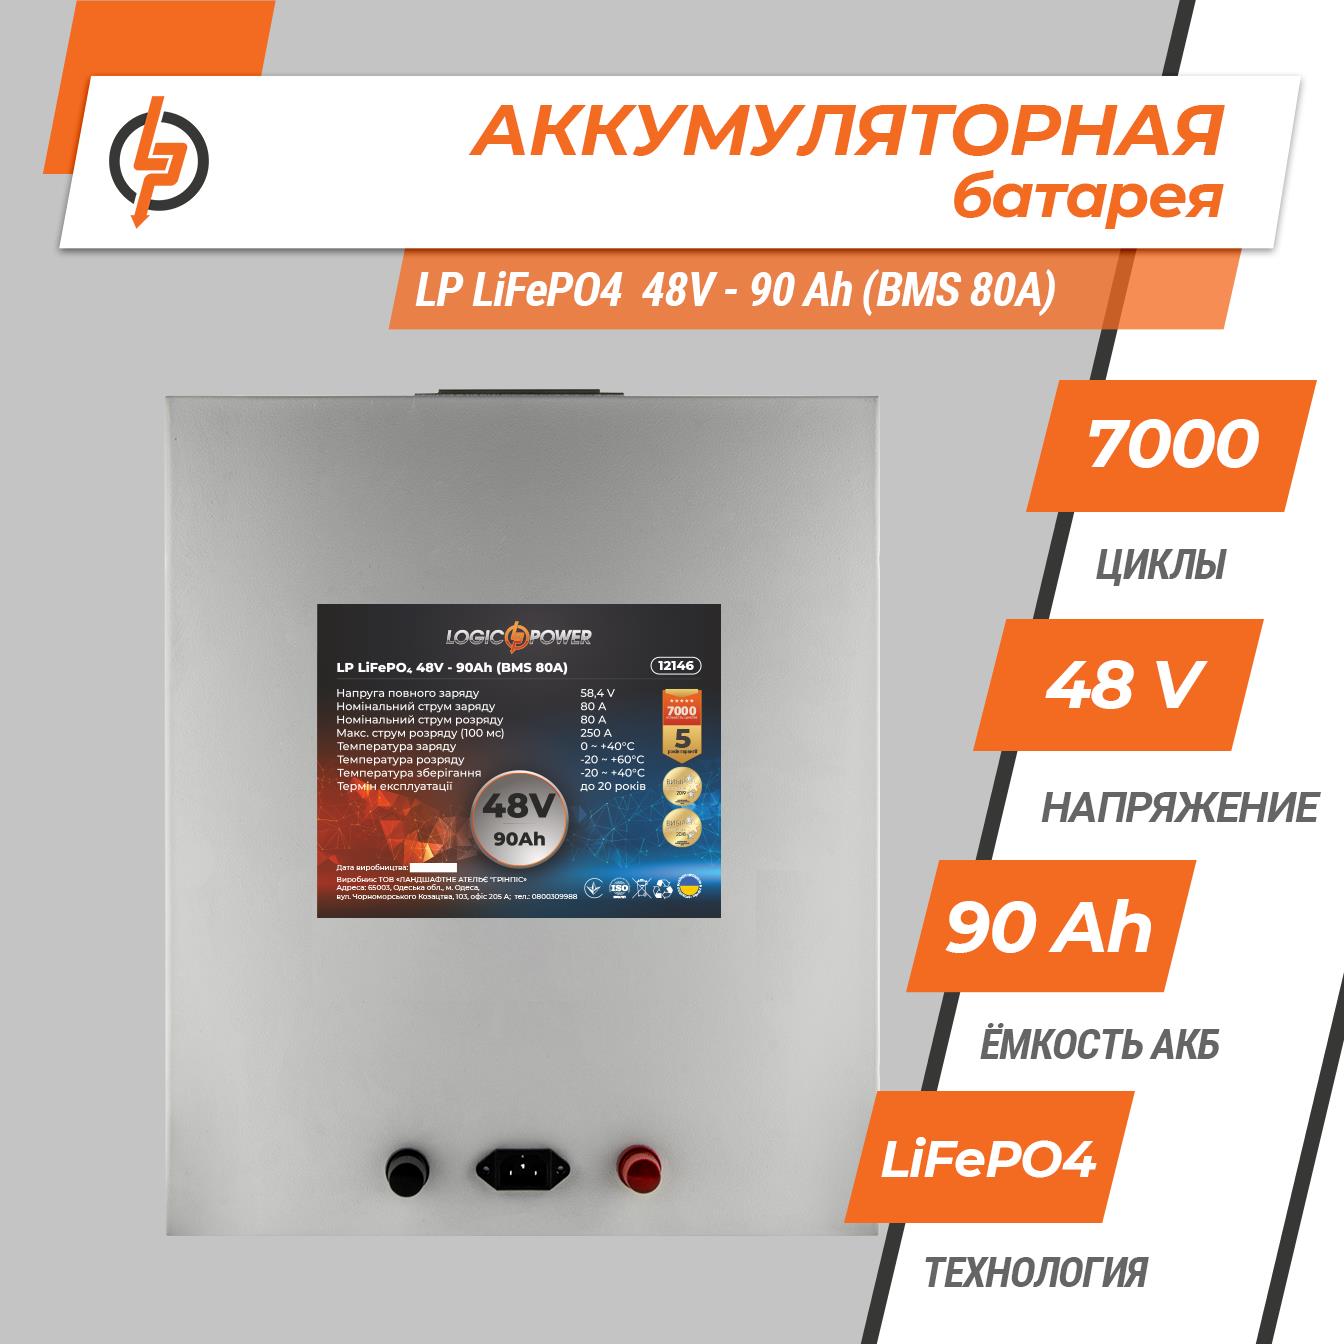 Аккумулятор литий-железо-фосфатный LogicPower LP LiFePO4 48V - 90 Ah (BMS 80A) металл (12146) цена 58783.00 грн - фотография 2